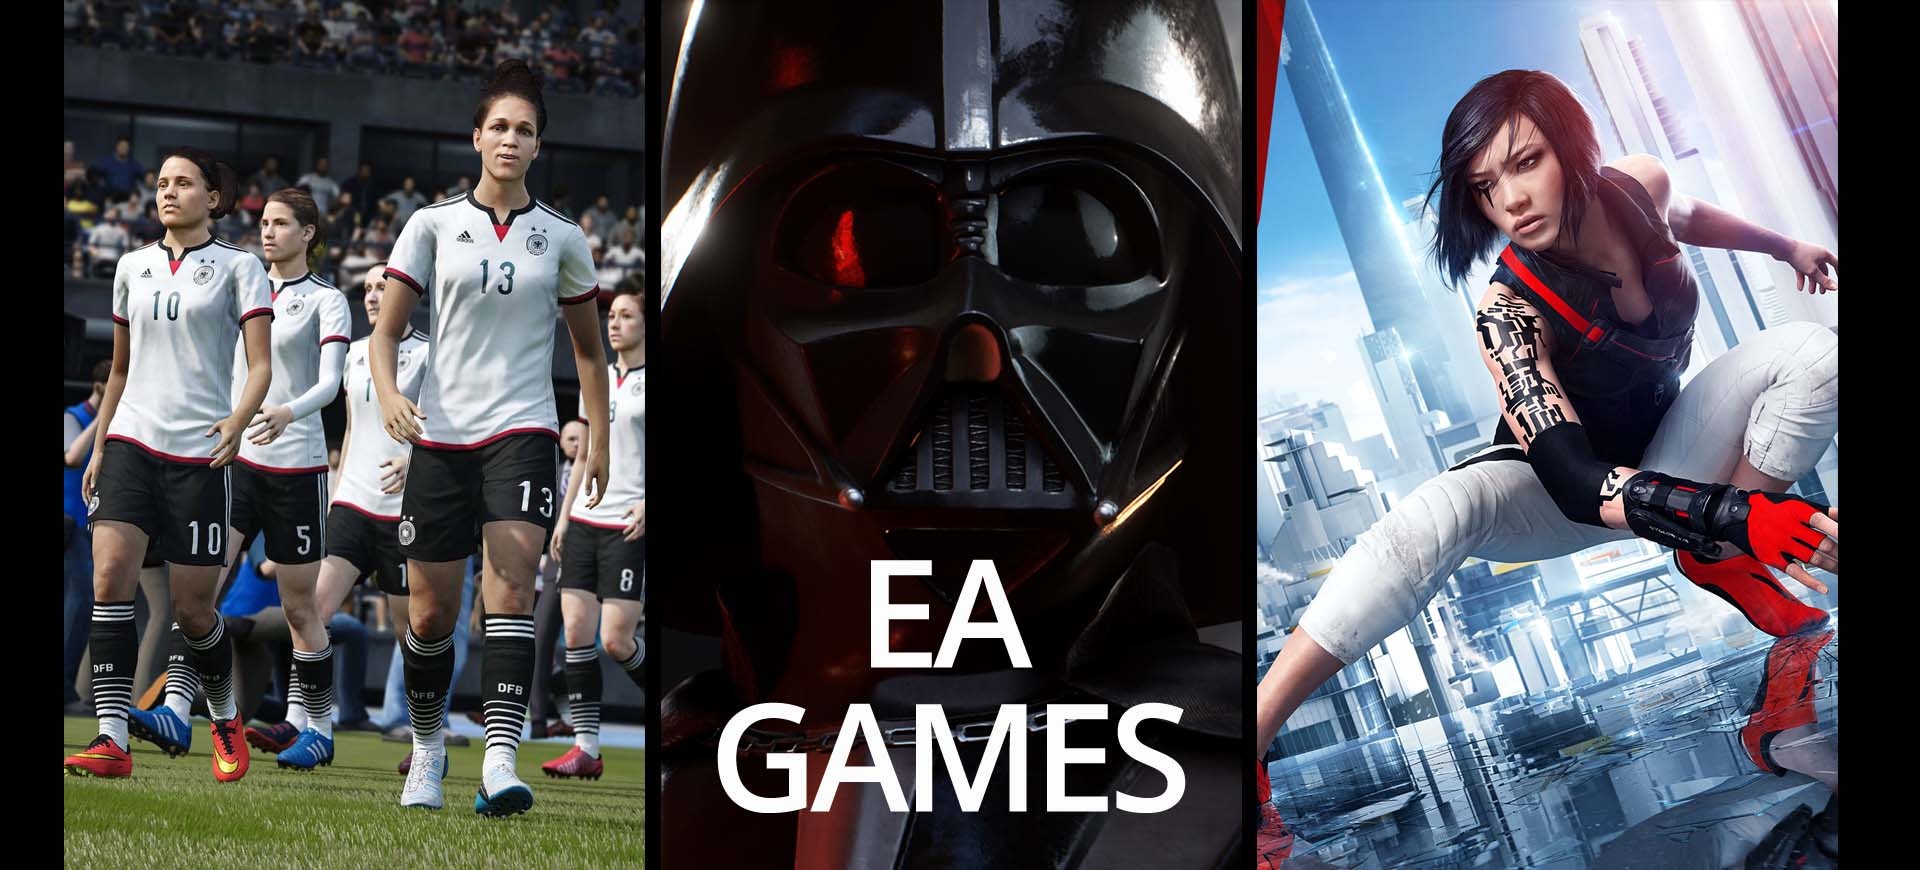 E3 2015: EA - Đội hình ít "tân binh"